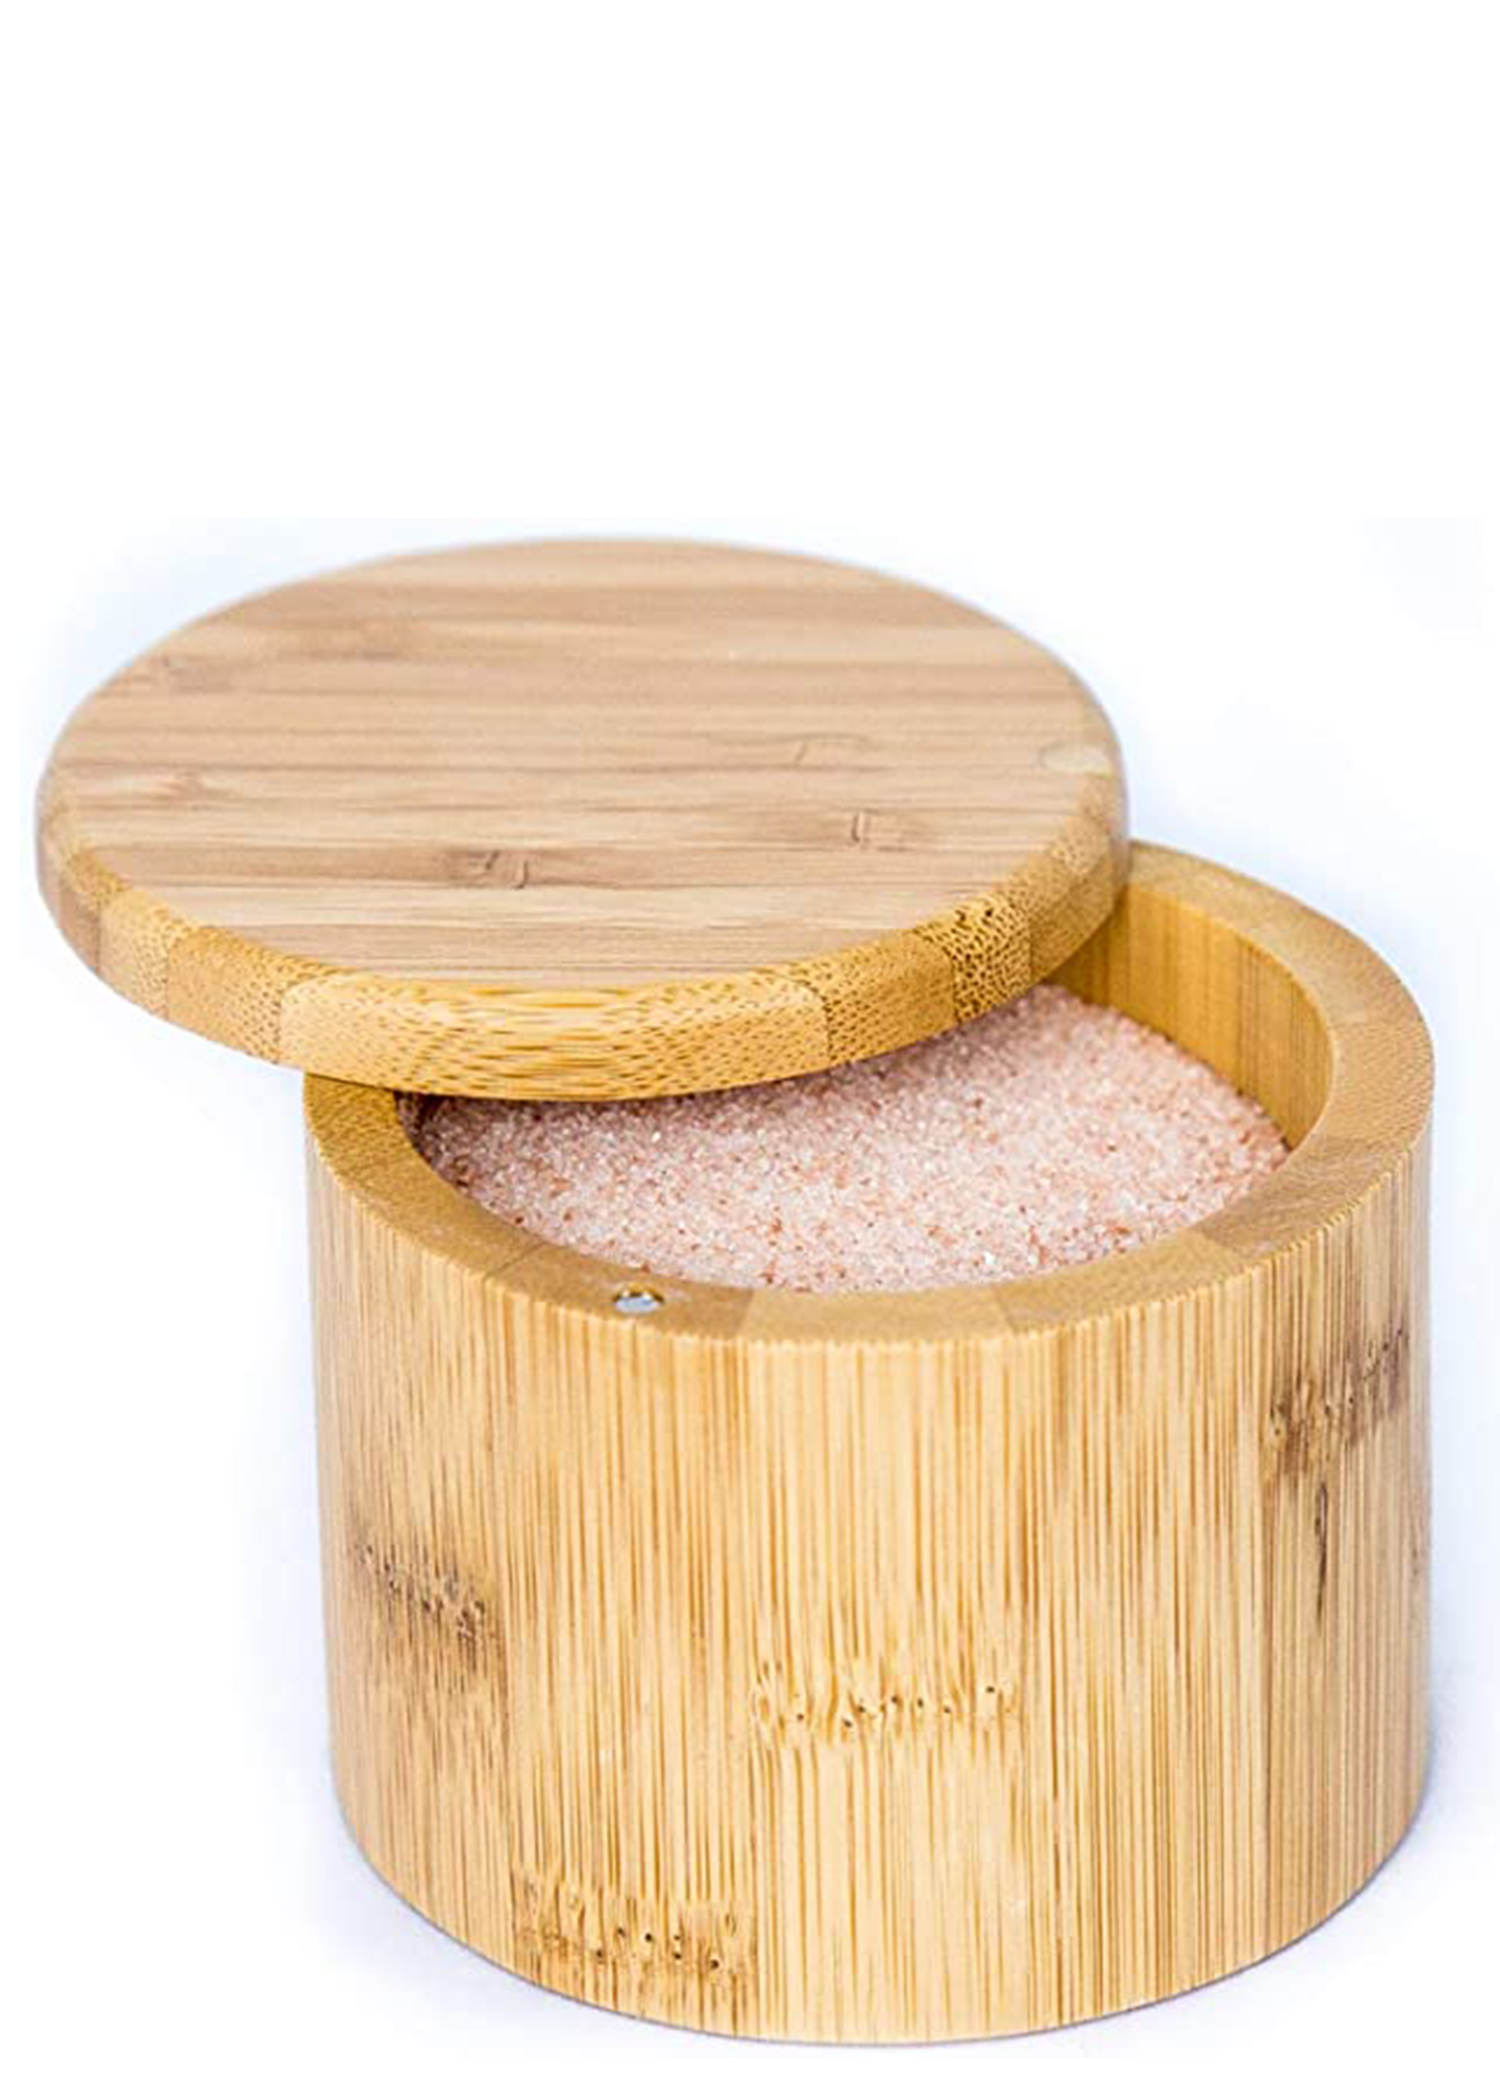 Bamboo Salt Keeper with Himalayan Pink Salt.